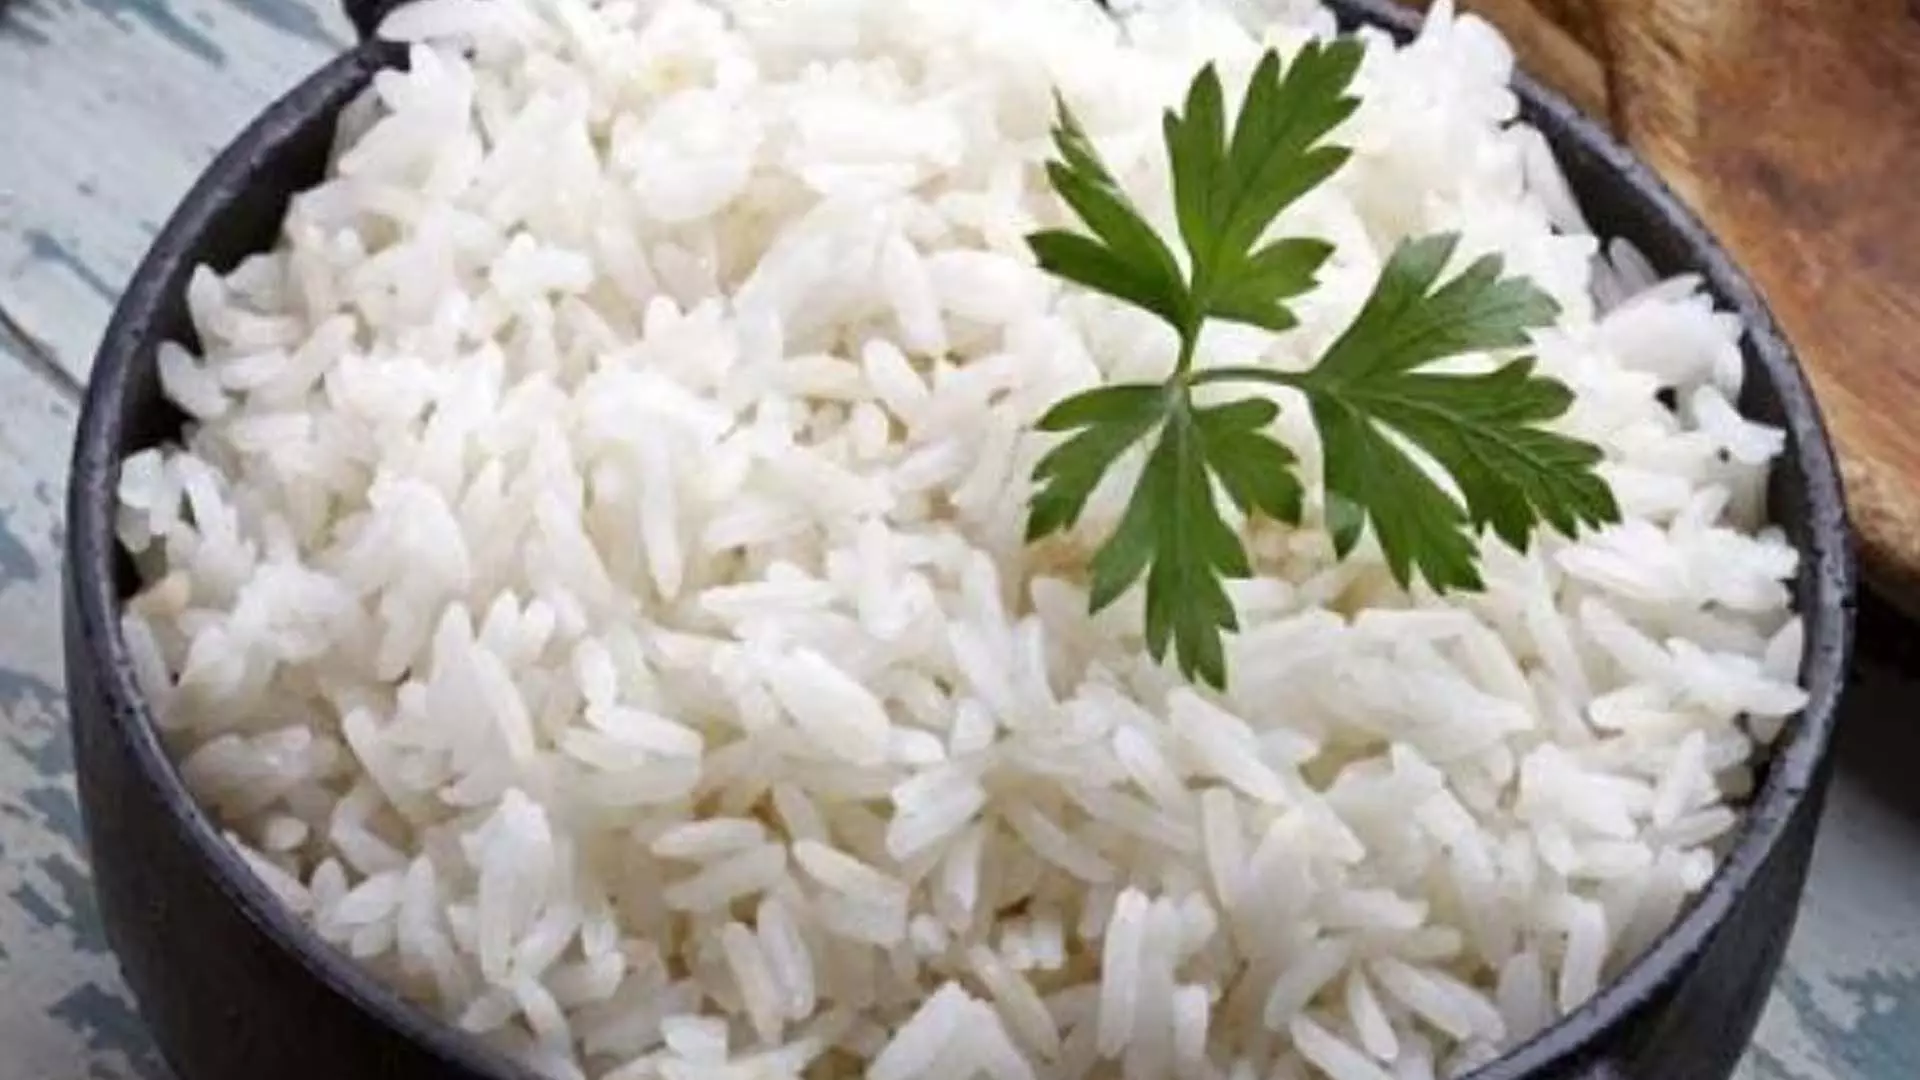 Rice:खिले-खिले चावल देख खिल जाएंगे सबके चेहरे इस तरह से फटाफट तैयार होते हैं राइस